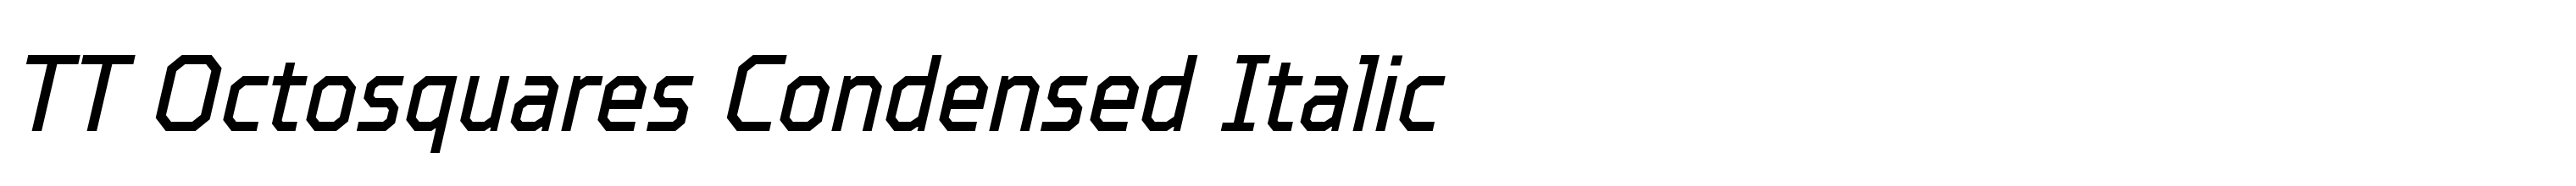 TT Octosquares Condensed Italic